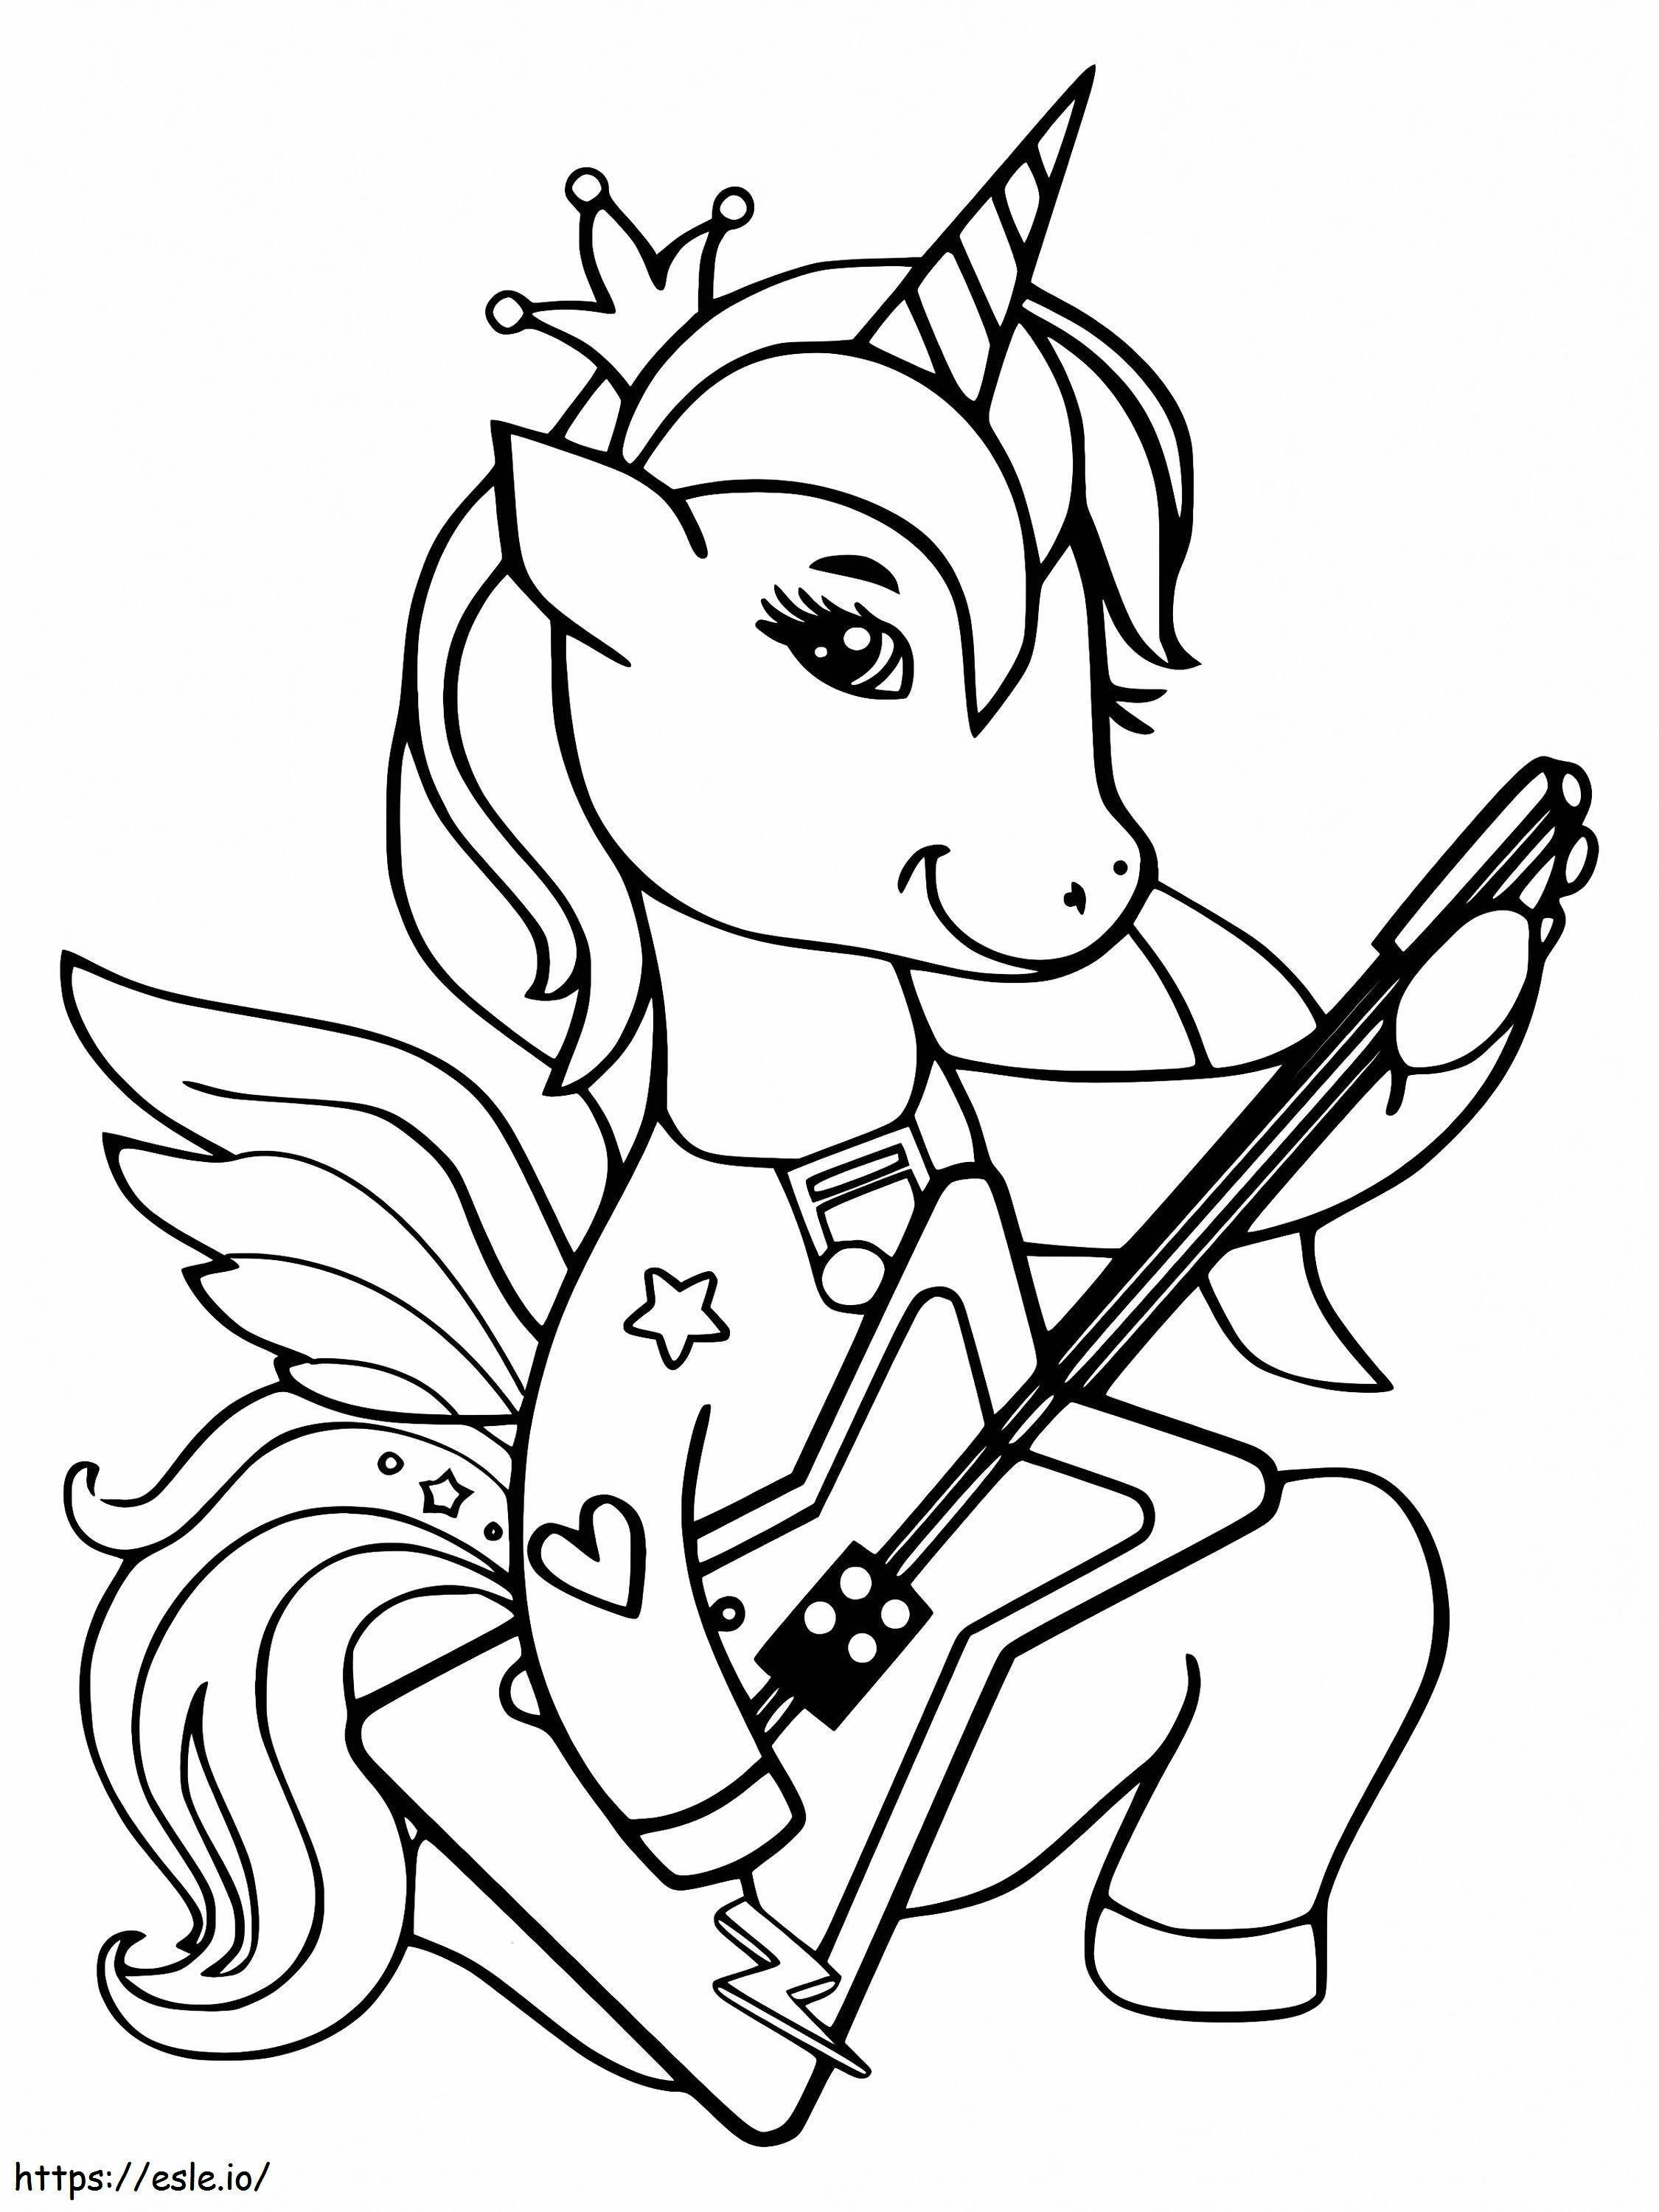 Alicornio tocando una guitarra para colorear